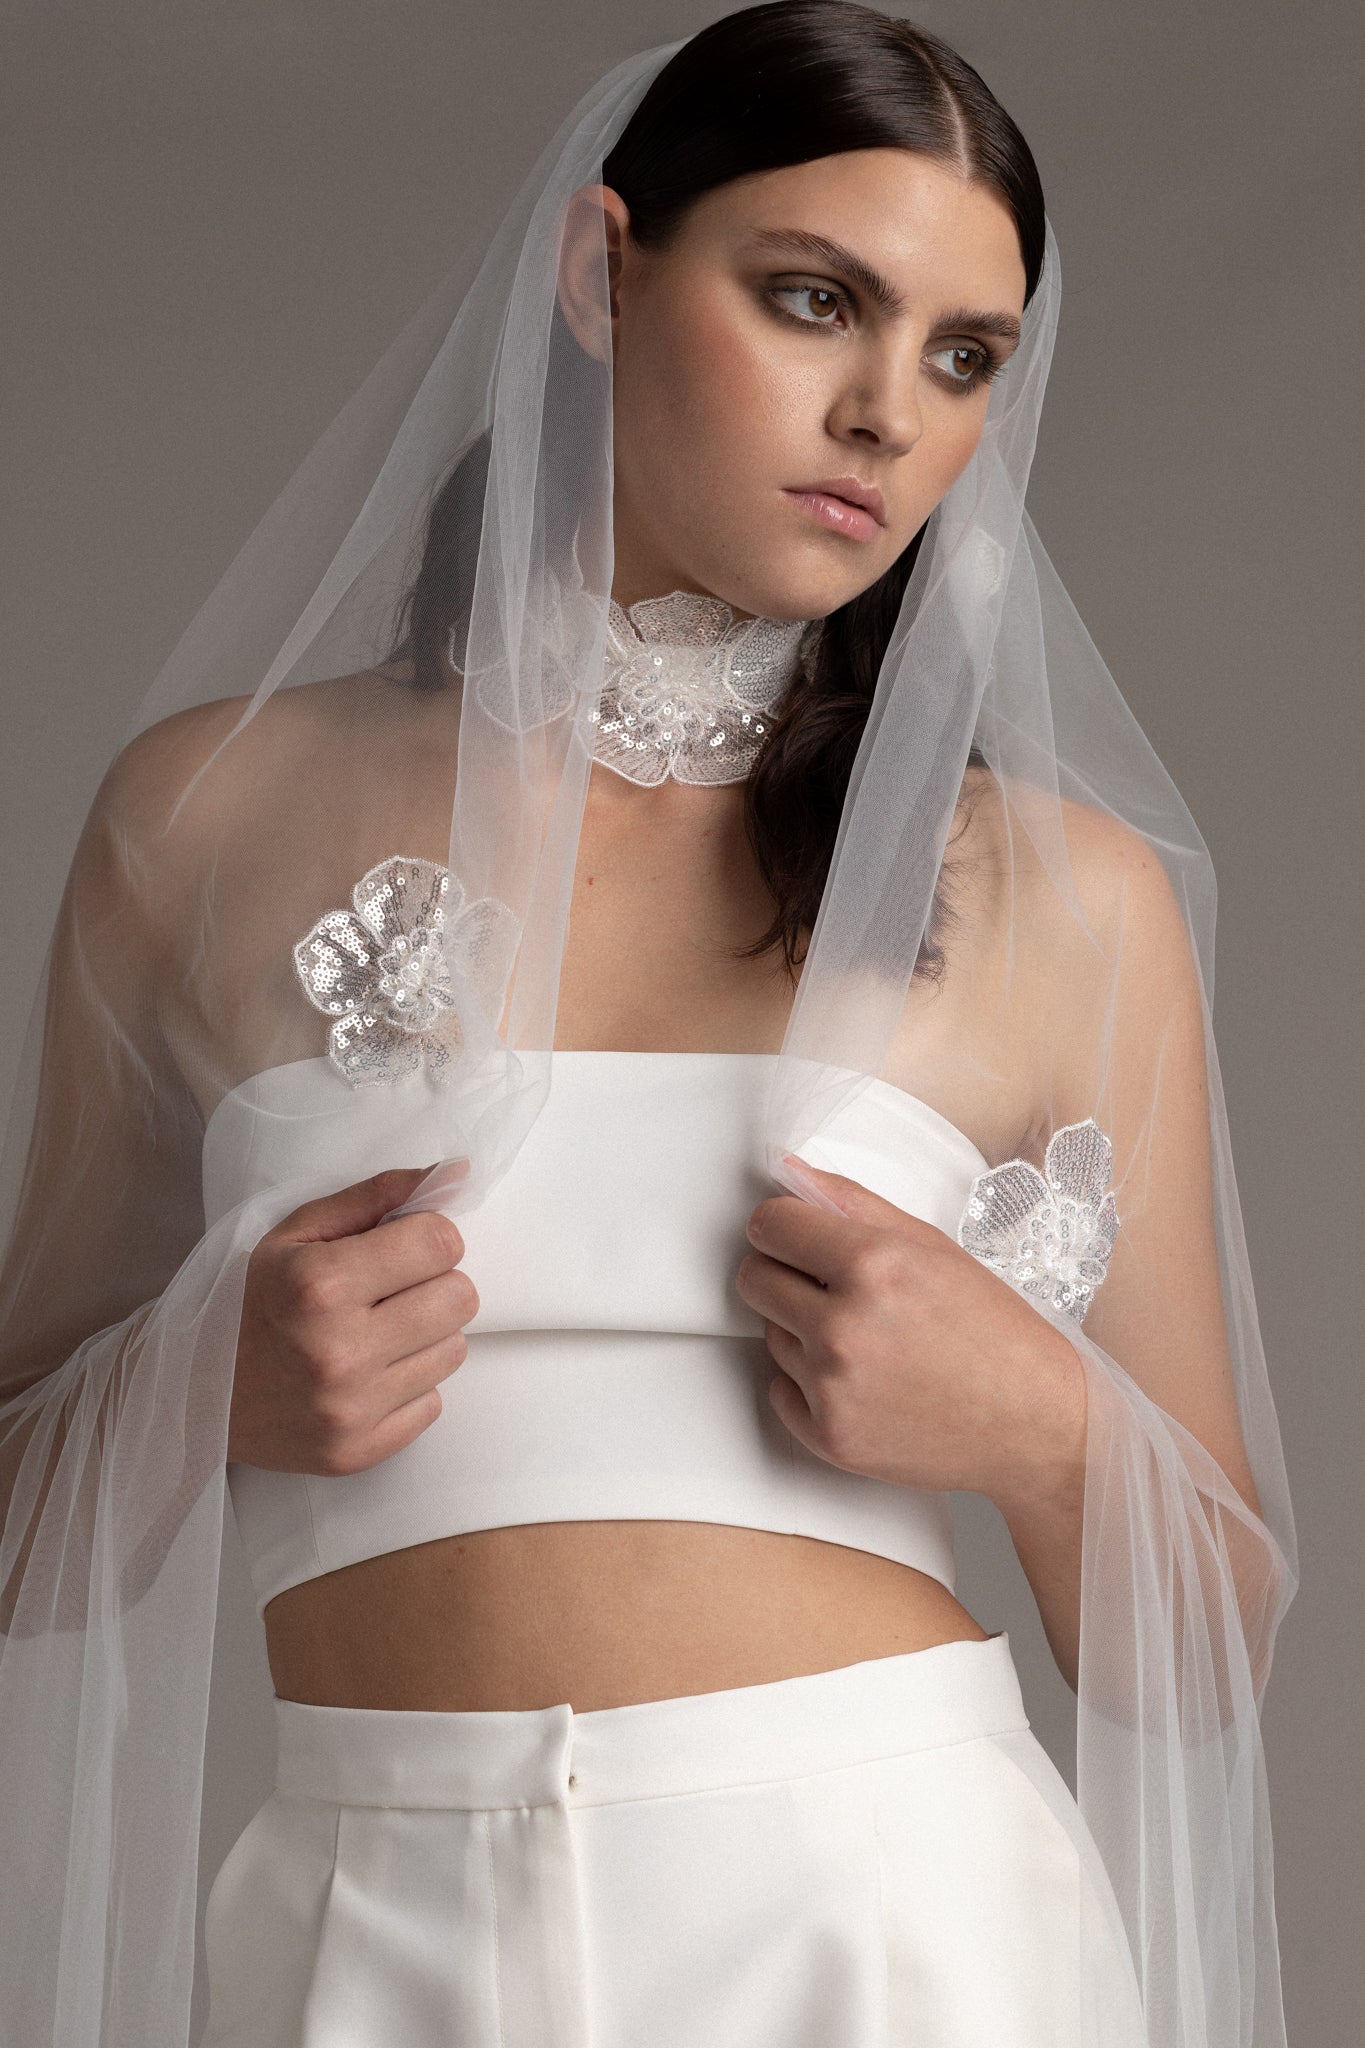 Modern bridal veils